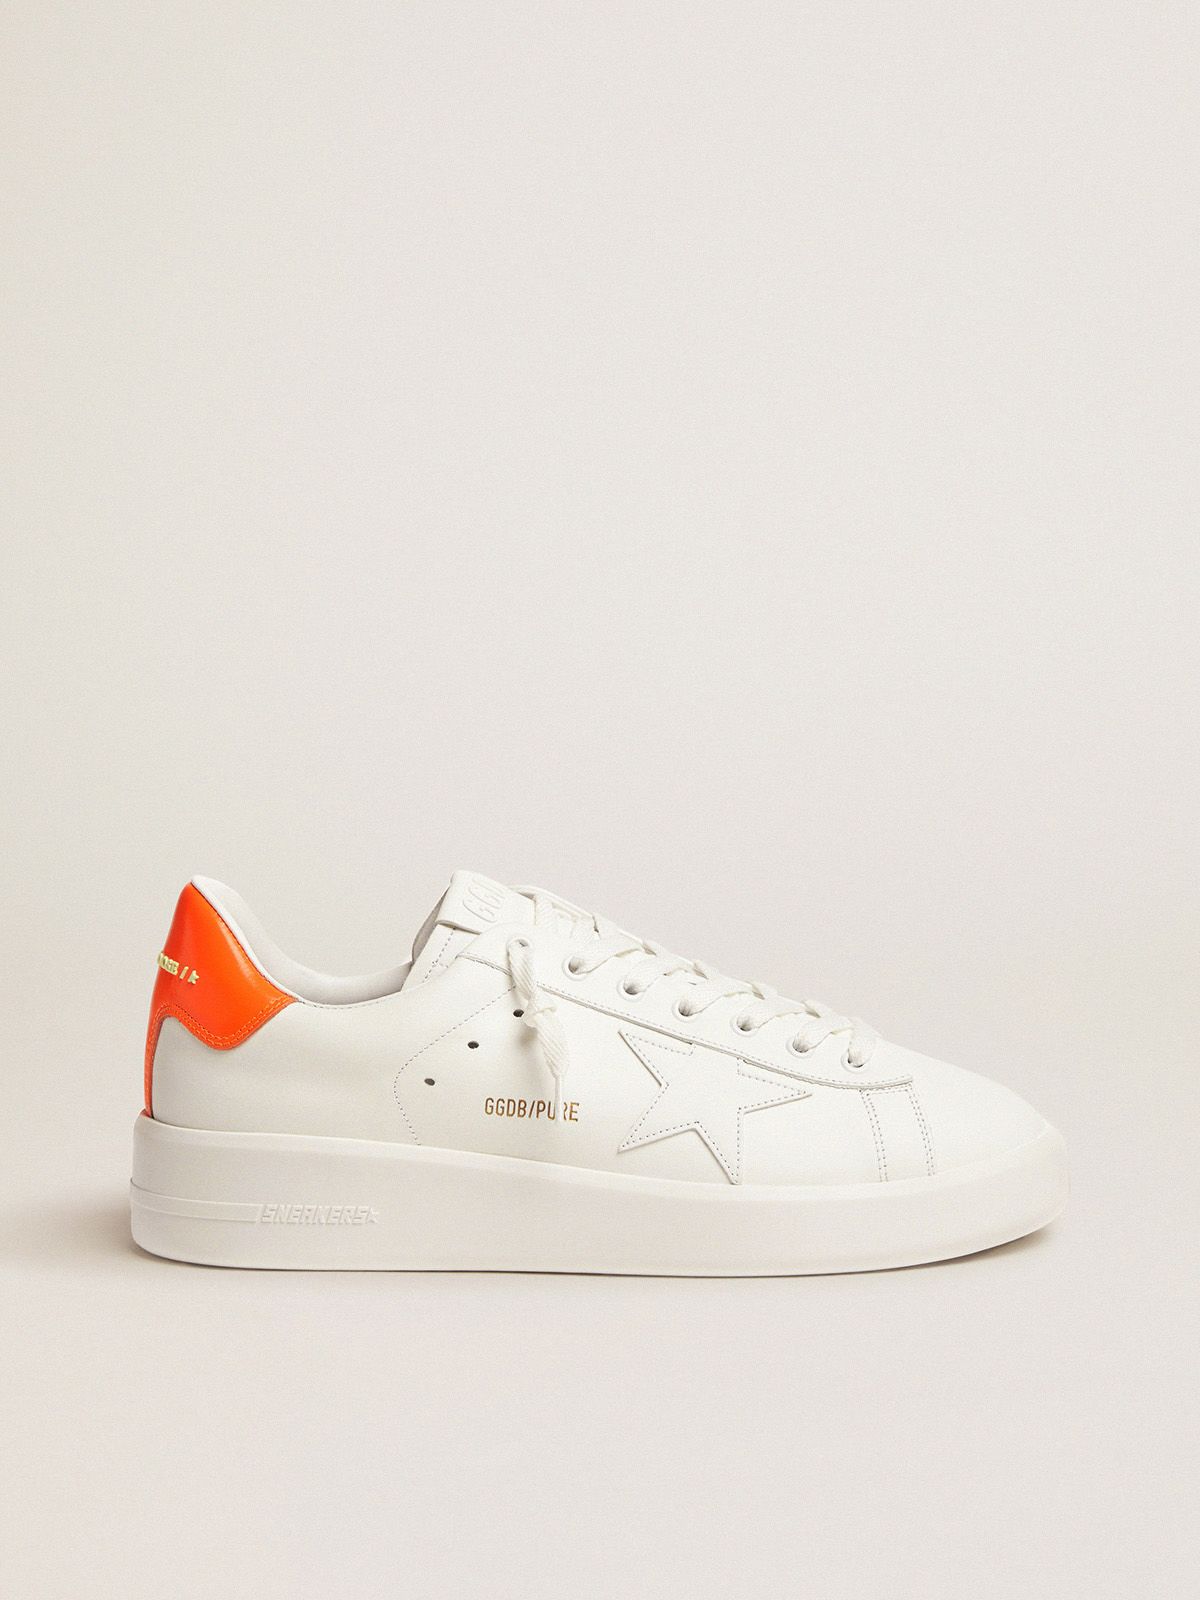 Af storm Bliv ved disk White Purestar sneakers with fluorescent orange heel tab | Golden Goose